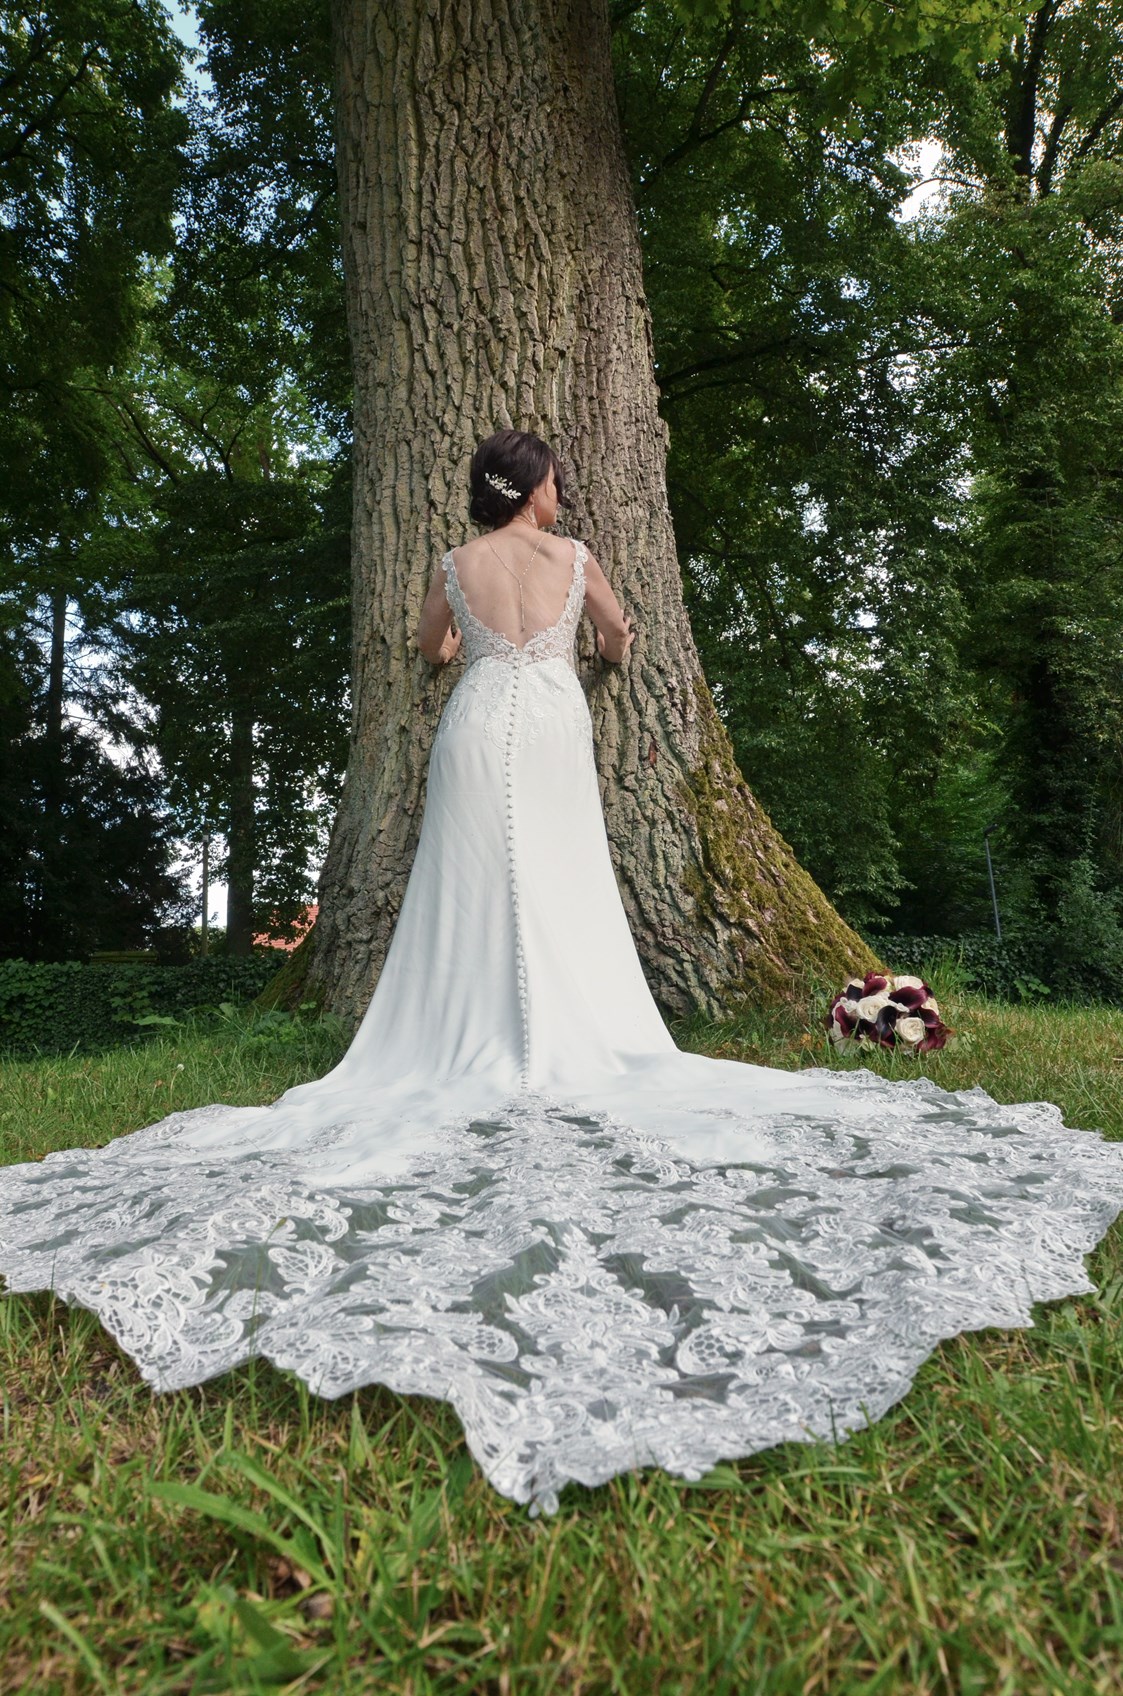 Hochzeitsfotograf: #brautshooting##fotograf#
#hochzeitsfotograf#
#foto-presse#
#norddeutschland# - REINHARD BALZEREK